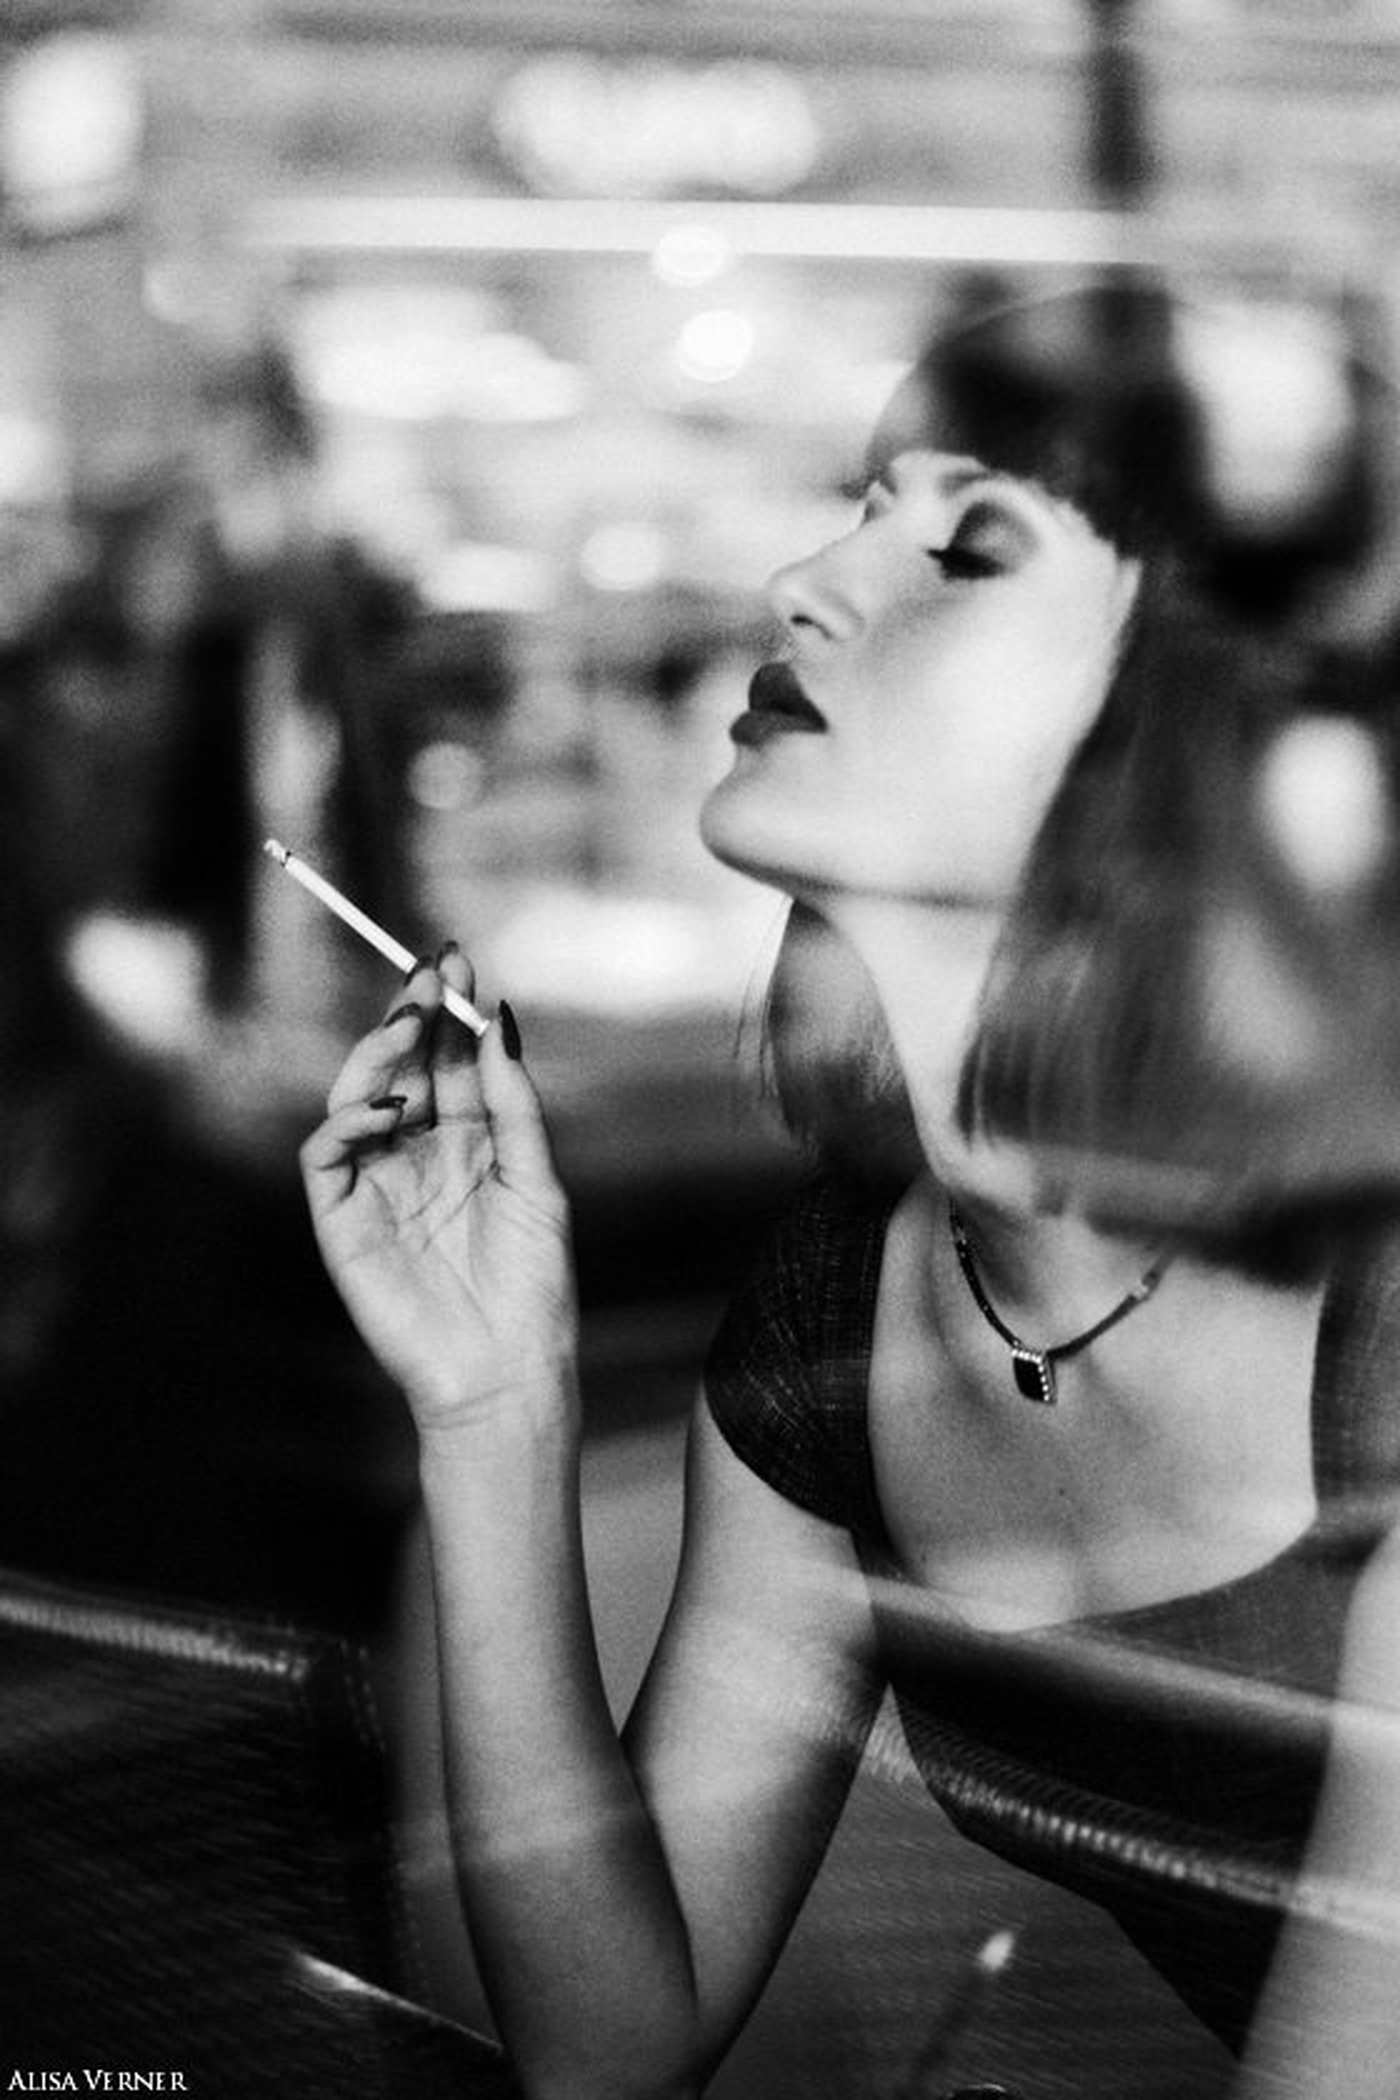 Чувственного работа. Алиса Вернер фотограф. Девушка курит. Девушка с каре и сигаретой. Девушка с каре курит.